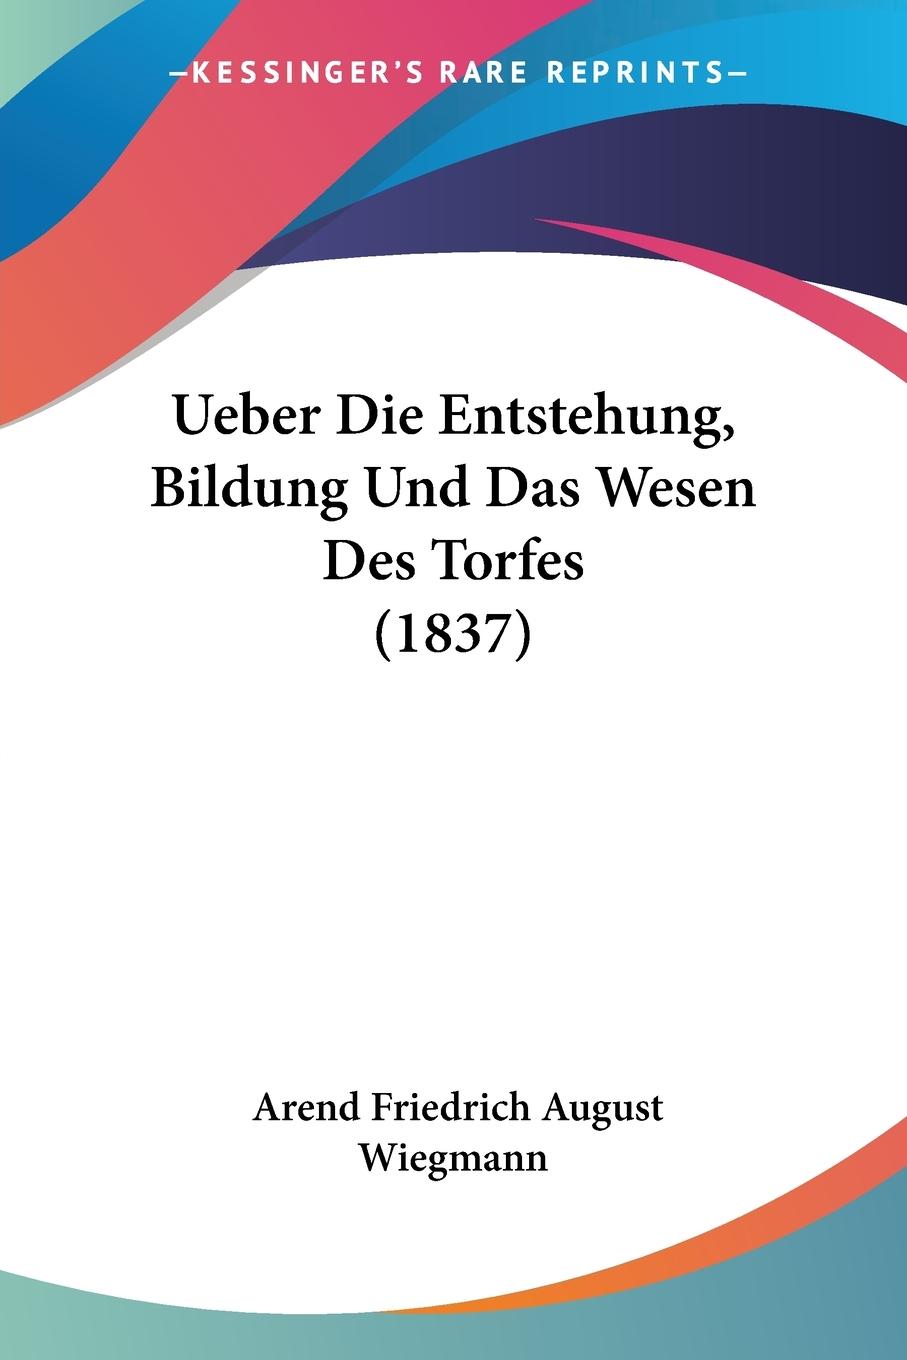 Ueber Die Entstehung, Bildung Und Das Wesen Des Torfes (1837) - Wiegmann, Arend Friedrich August